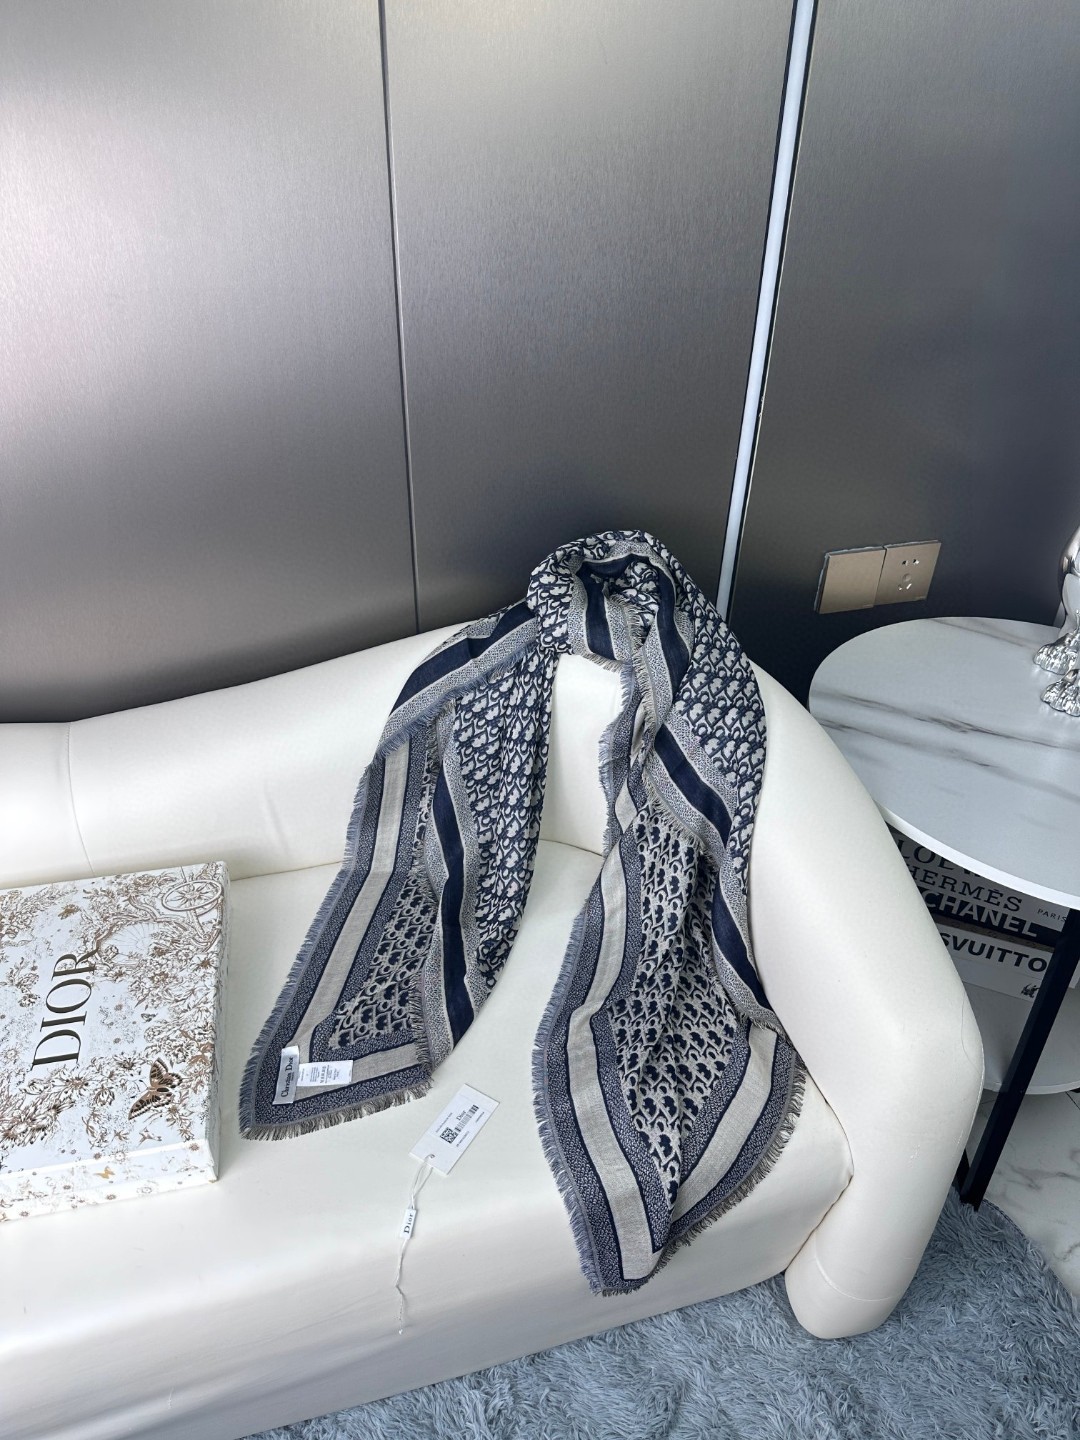 方巾Dior披肩️经典字母搭配丝毛混纺的华美质感与成衣和配饰系列单品搭配相宜尺寸140x140cm面料5